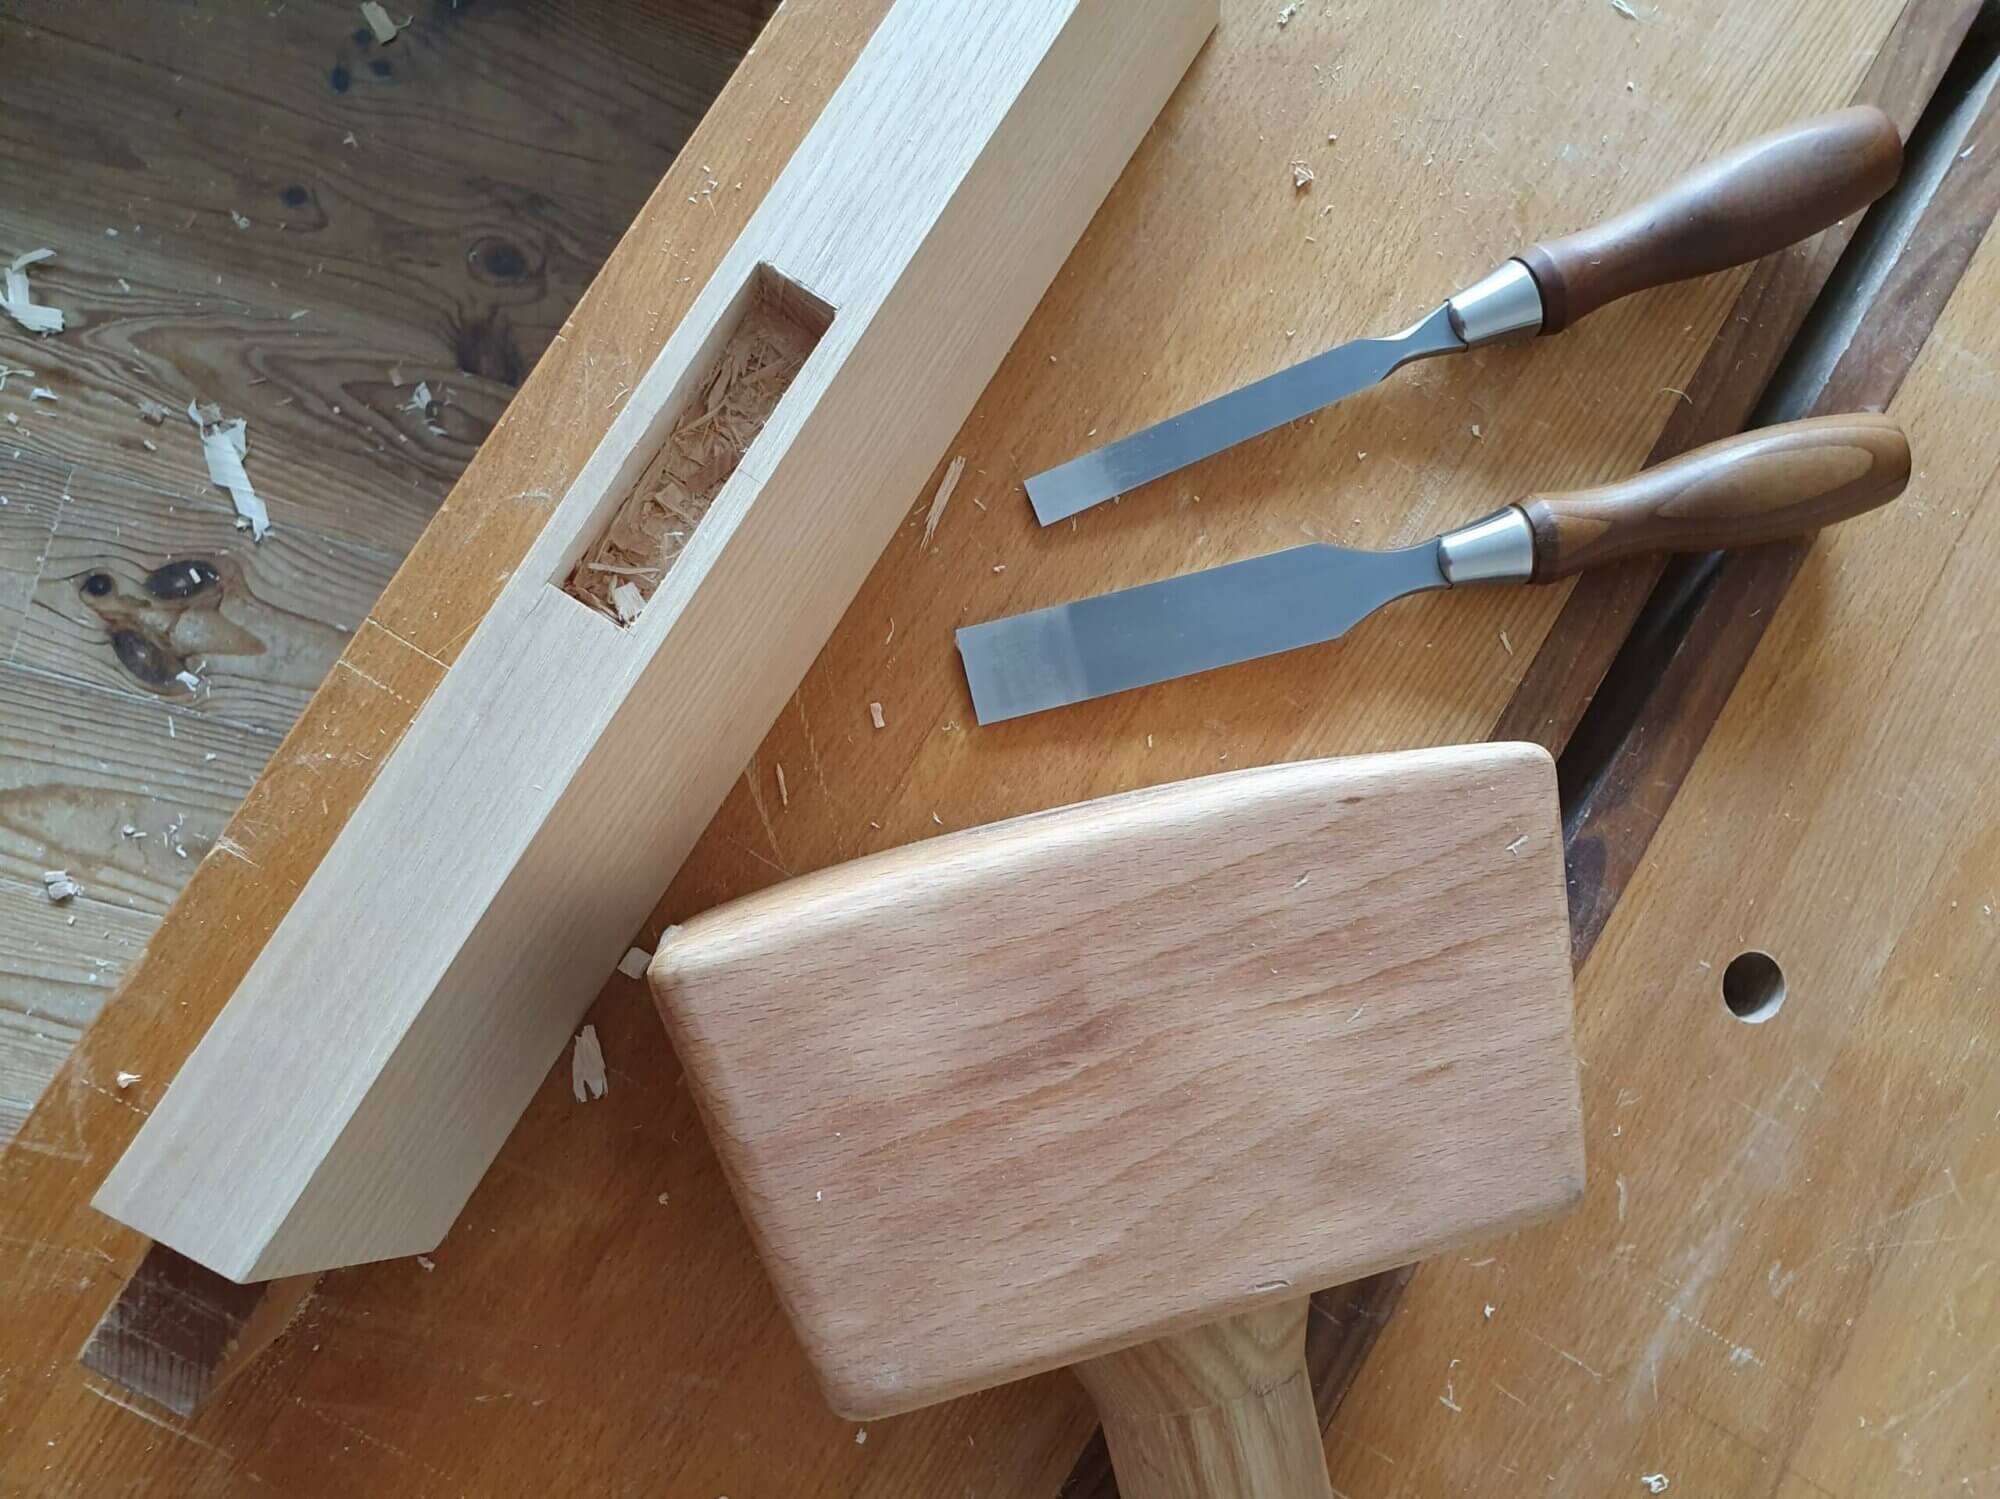 Un maillet, deux ciseaux à bois et une mortaise en cours de taille